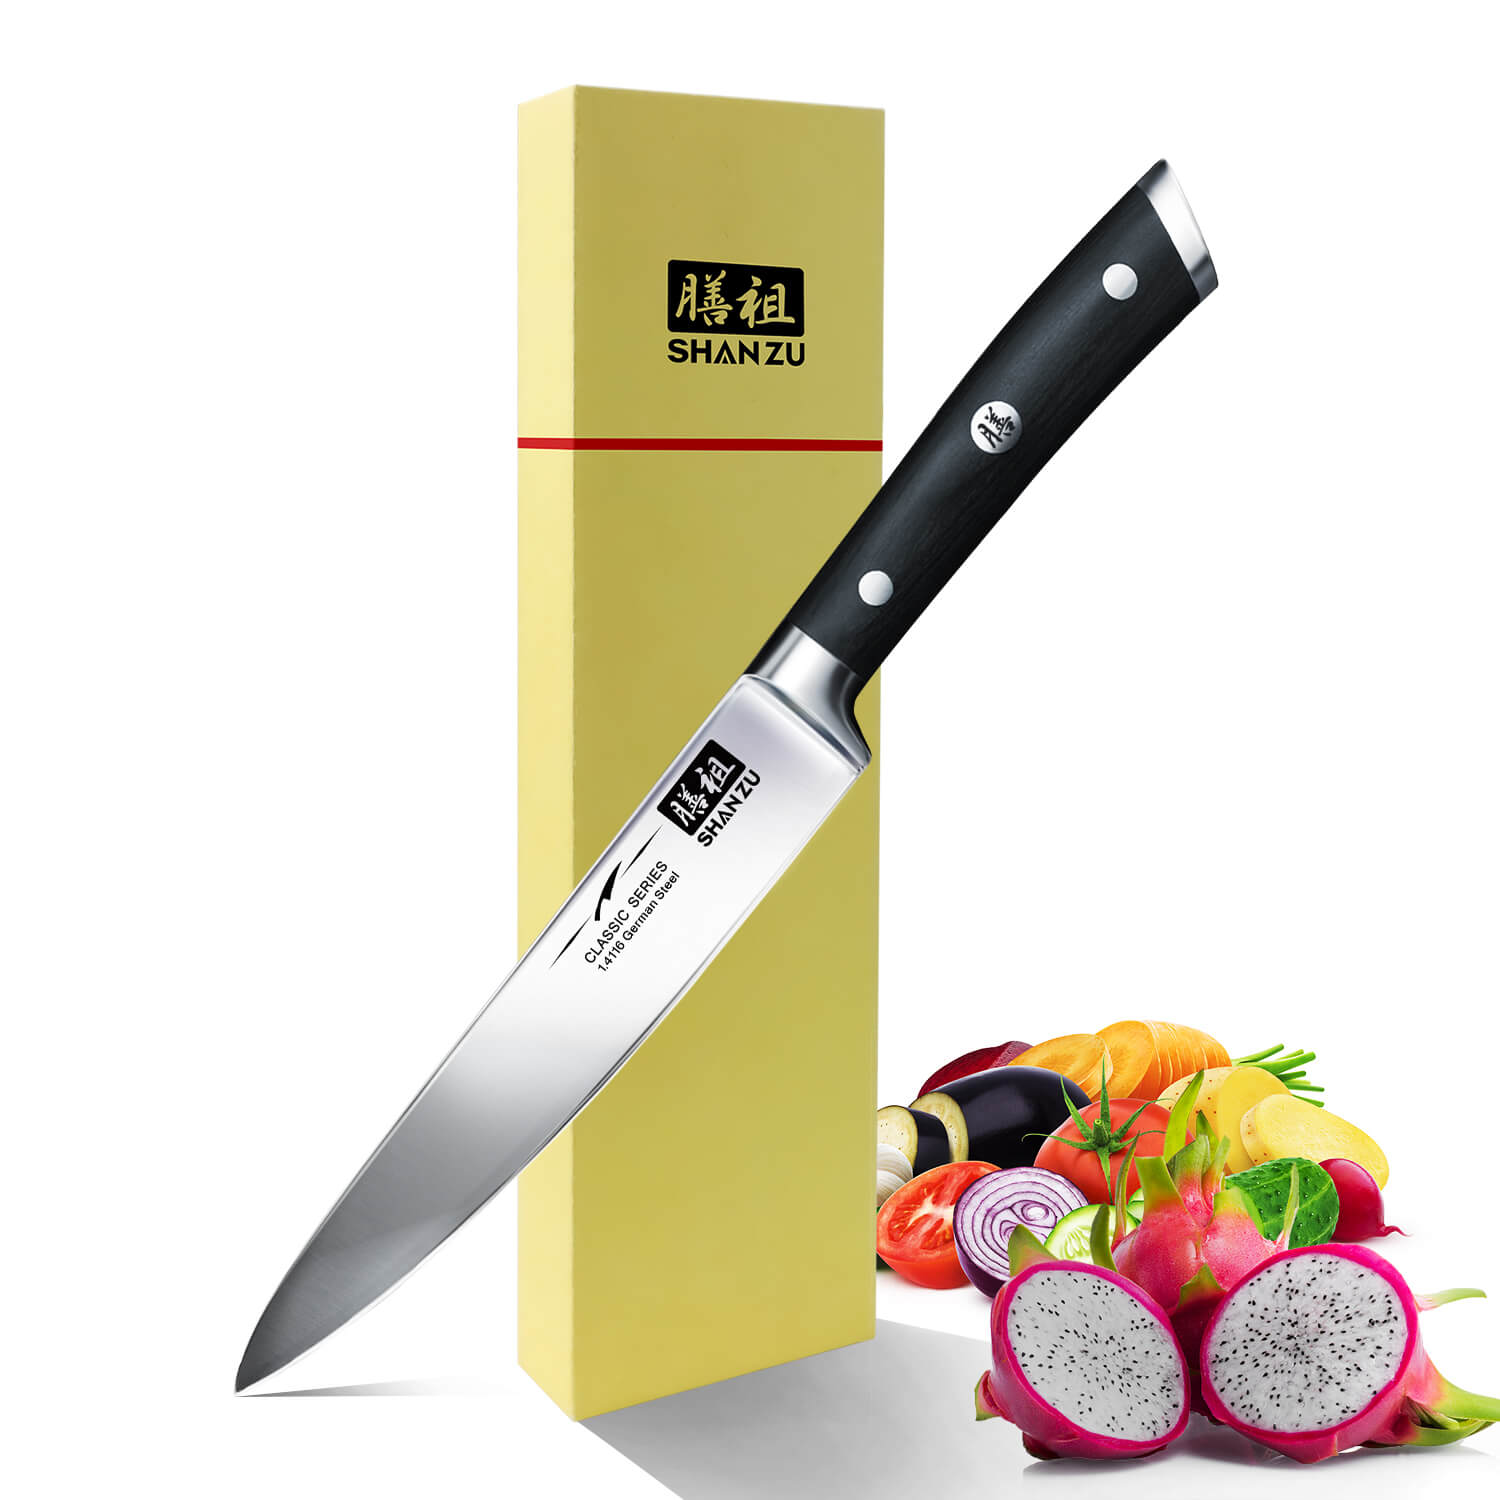 Couteau de Chef - SHAN ZU - Acier Inoxydable Allemagne 1.4116